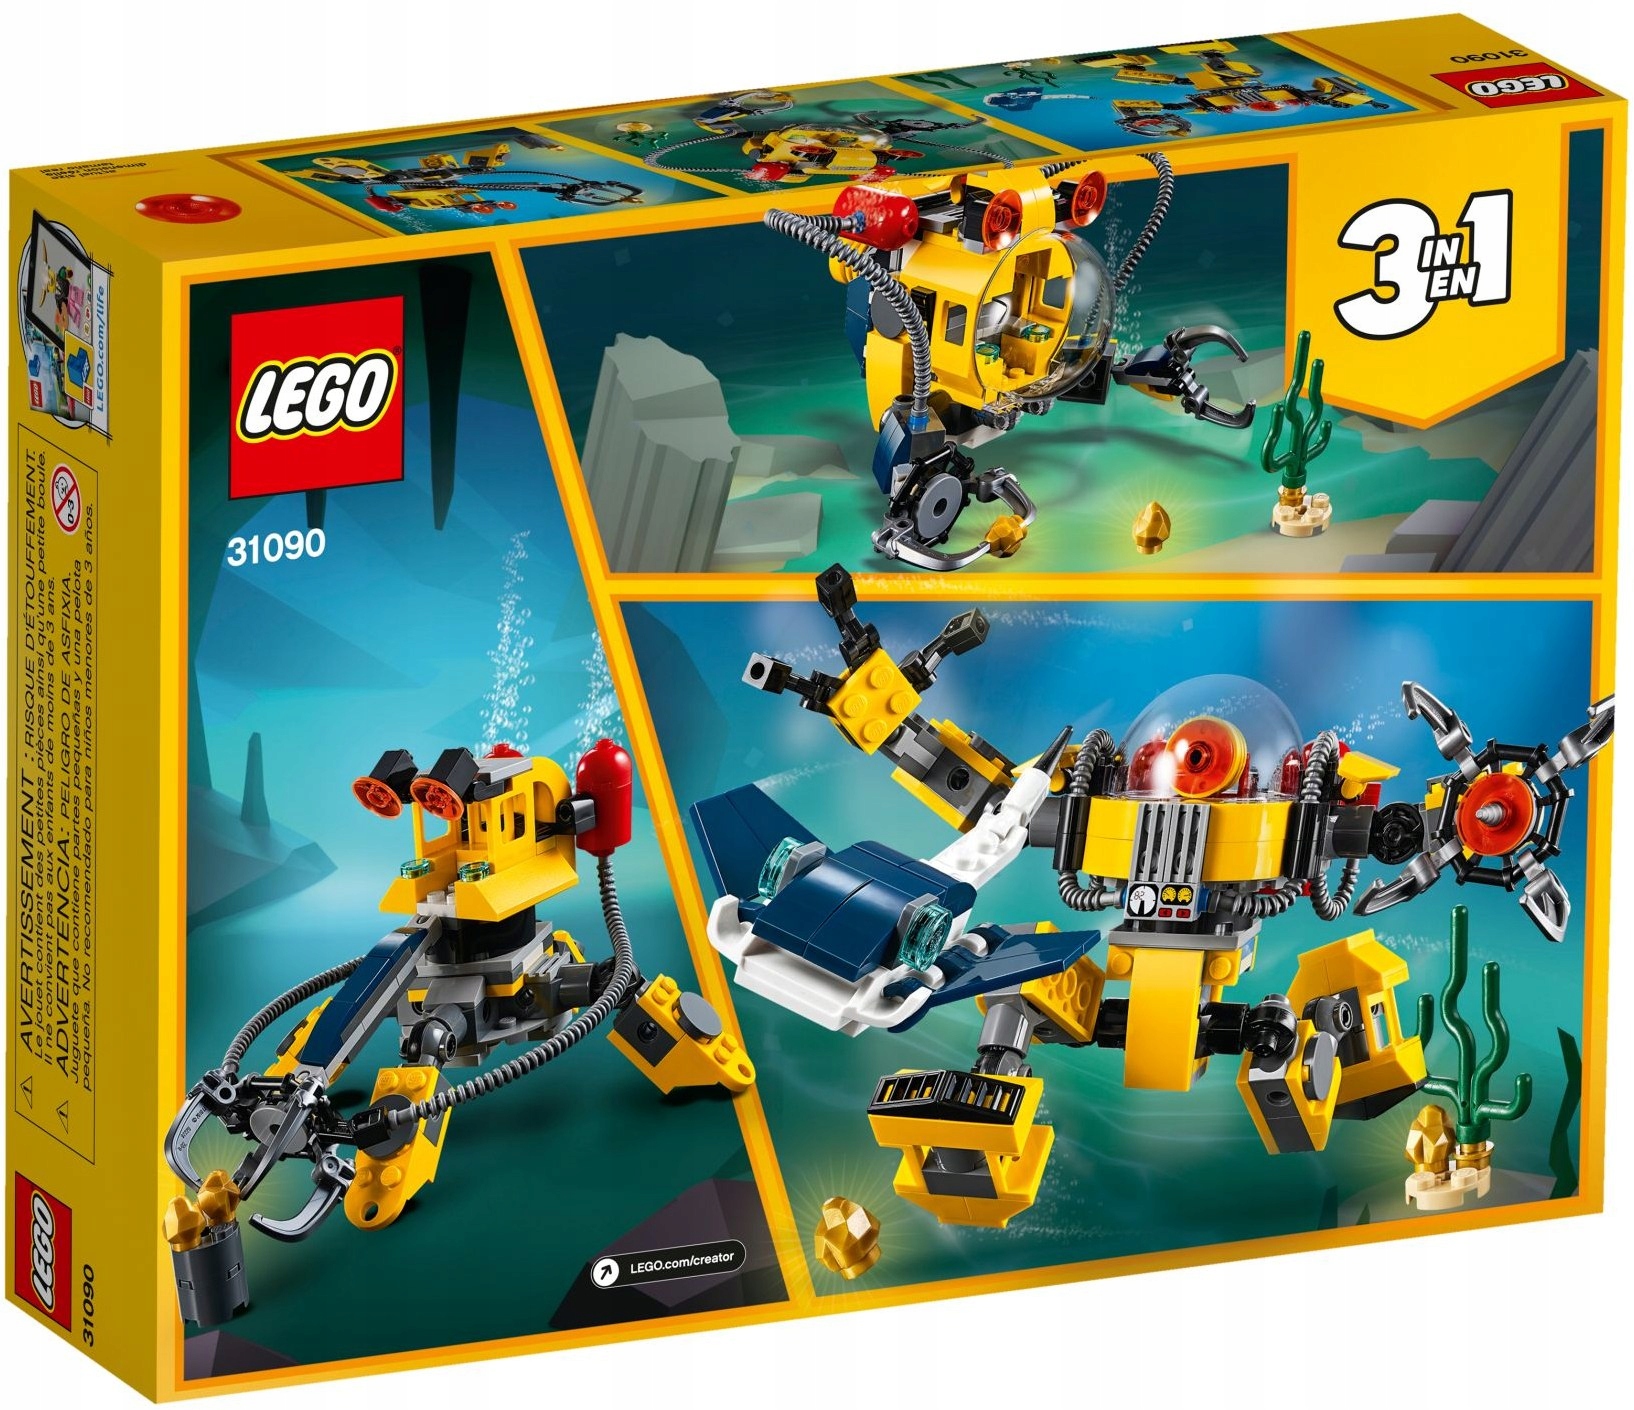 LEGO CREATOR Podwodny robot 3 w 1 31090 Liczba elementów 207 szt.